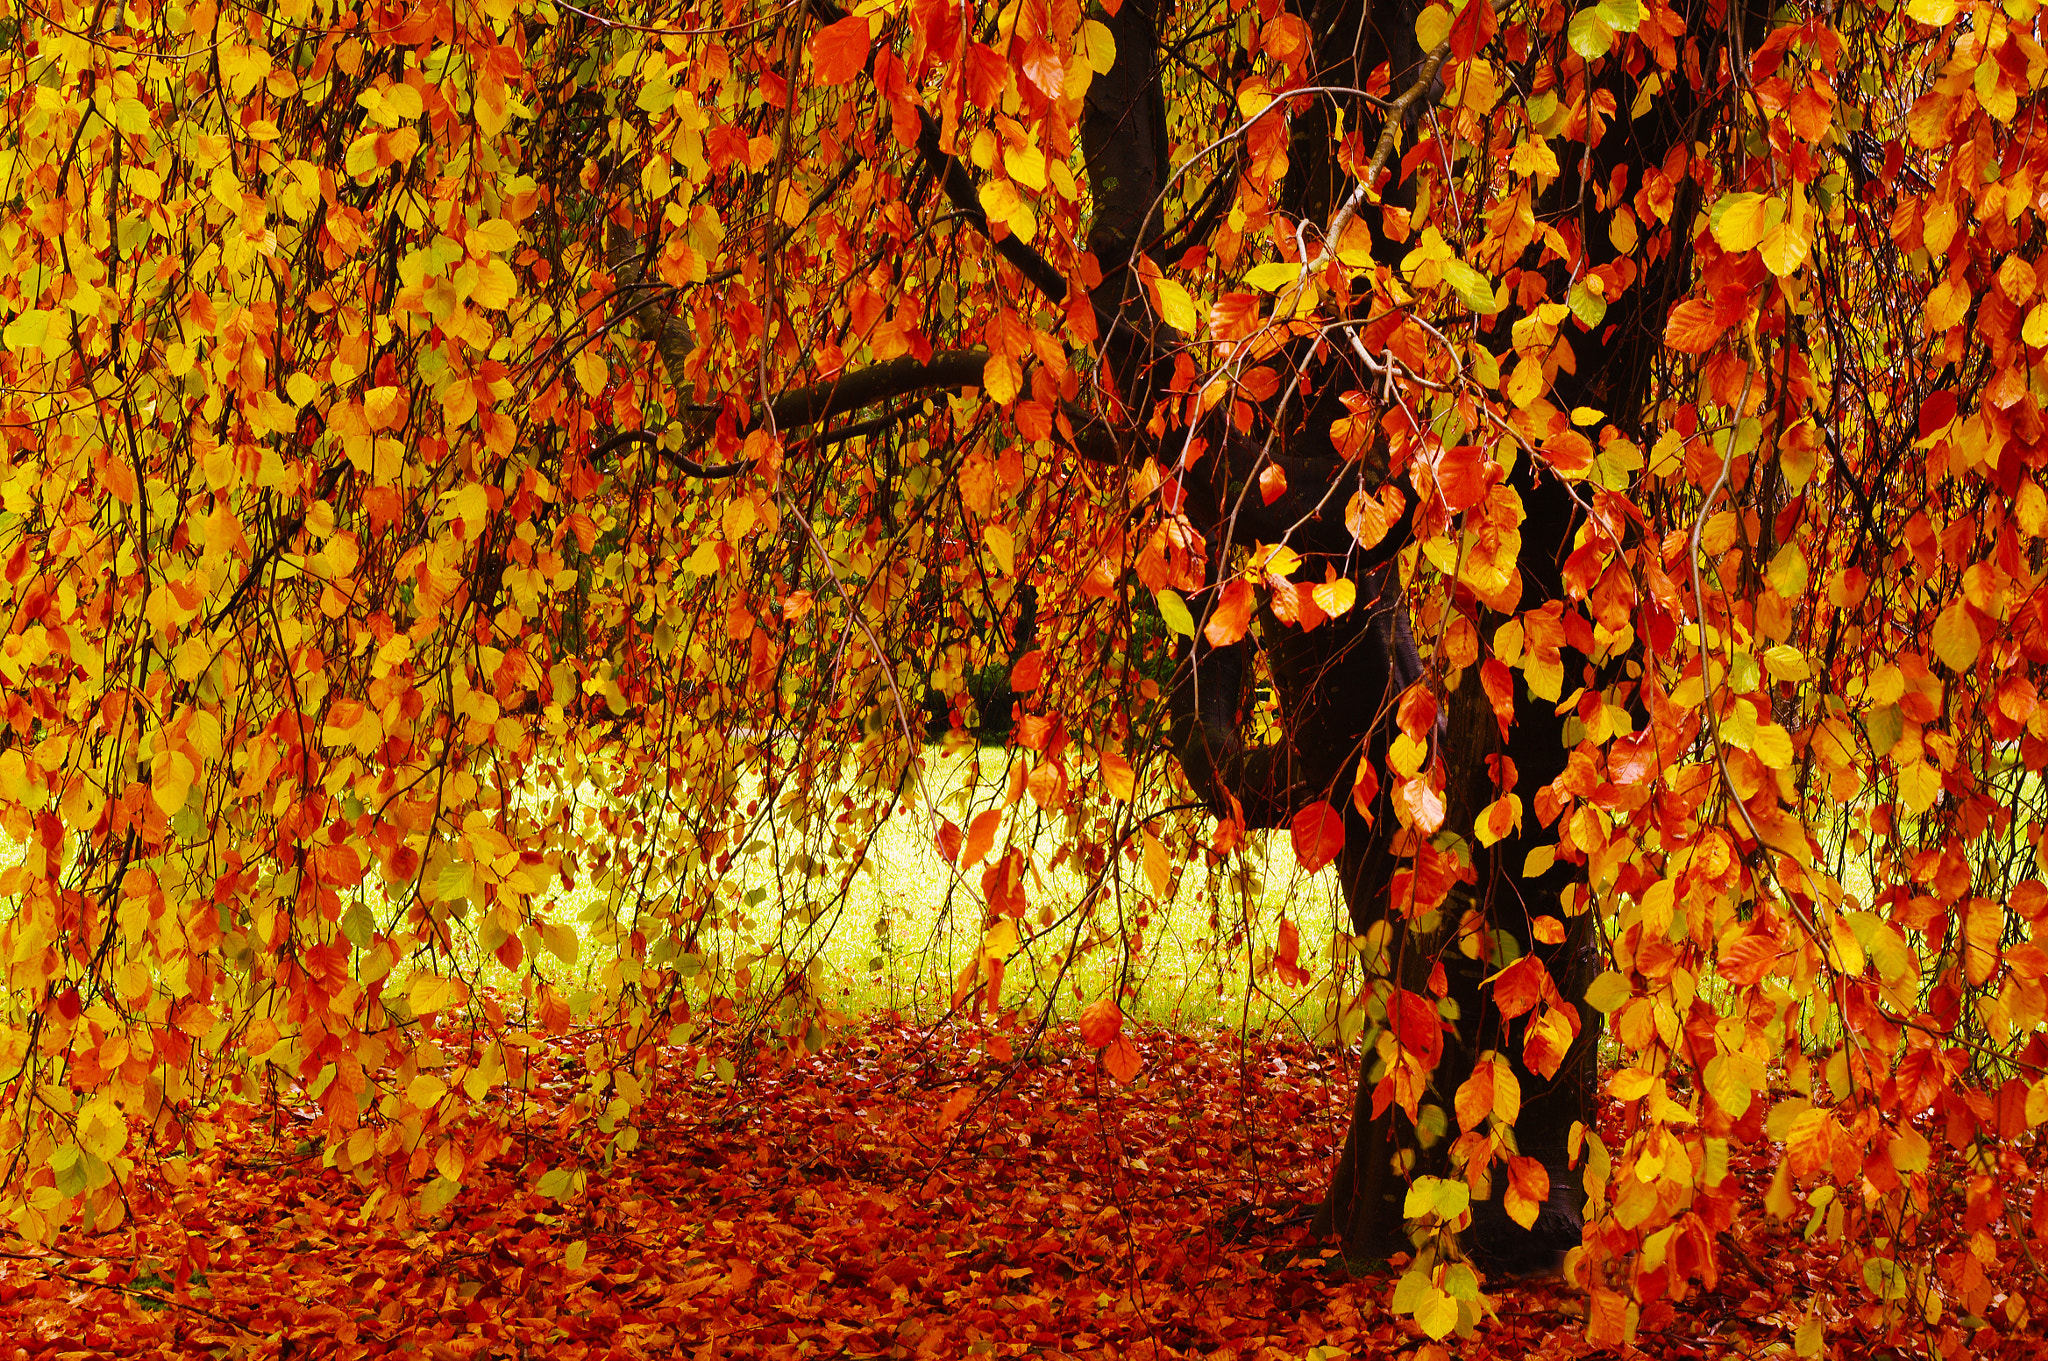 Осина осенью фото дерева и листьев